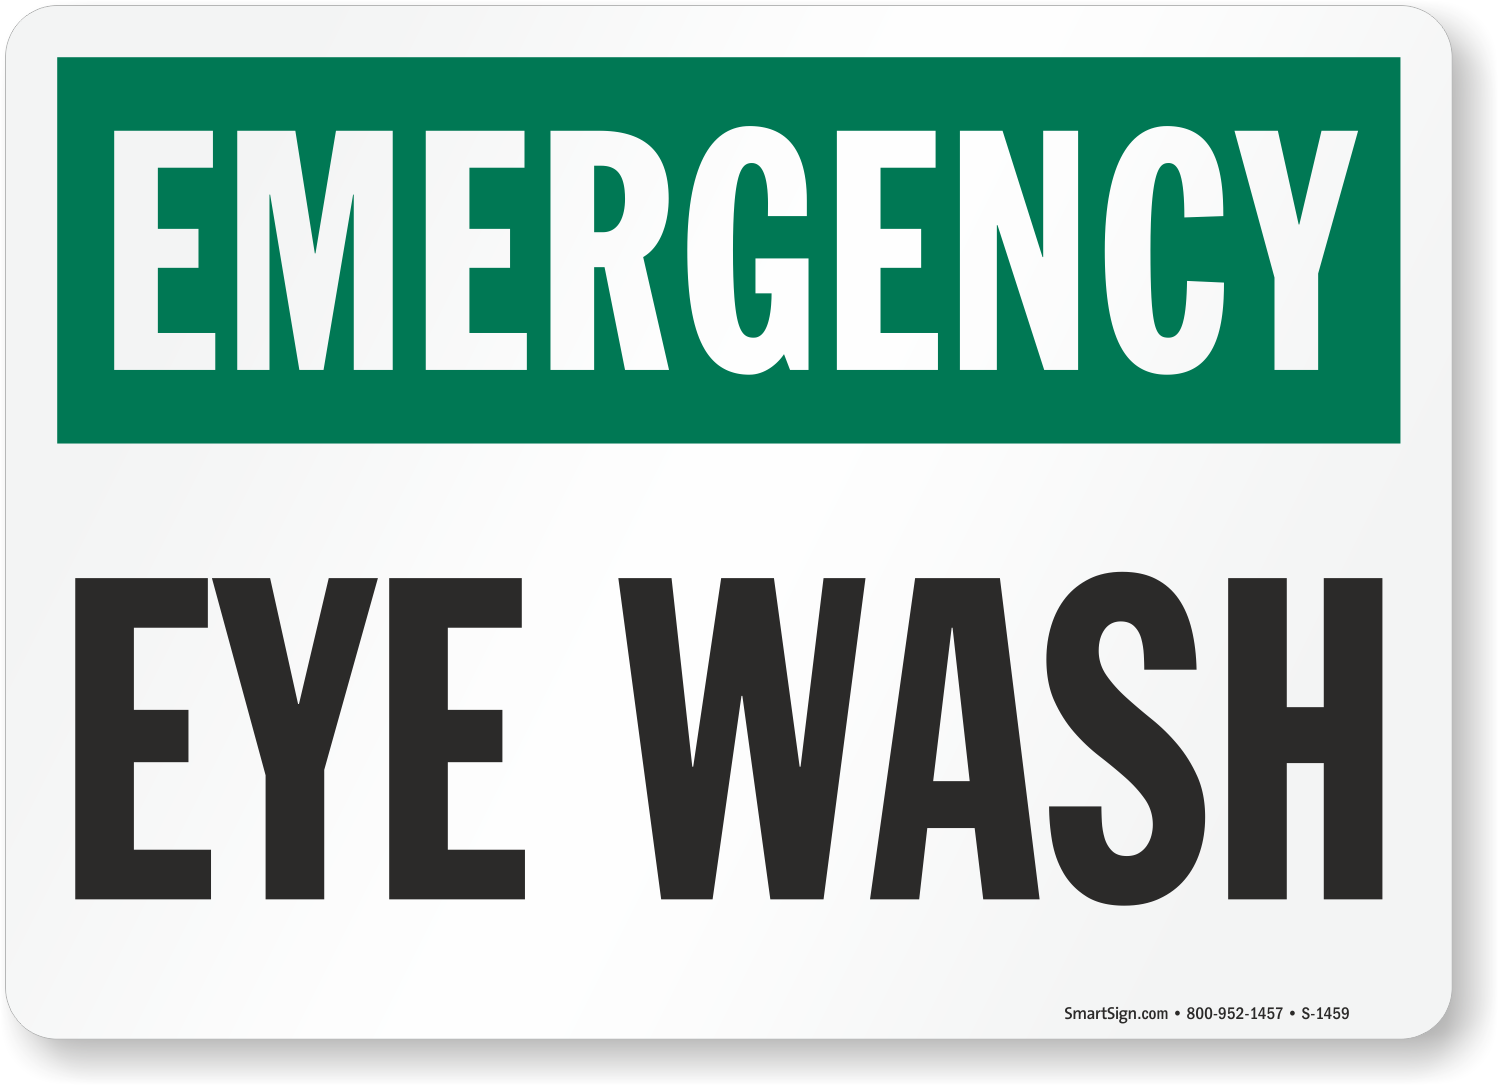 Free Printable Eye Wash Station Sign Printable Templates